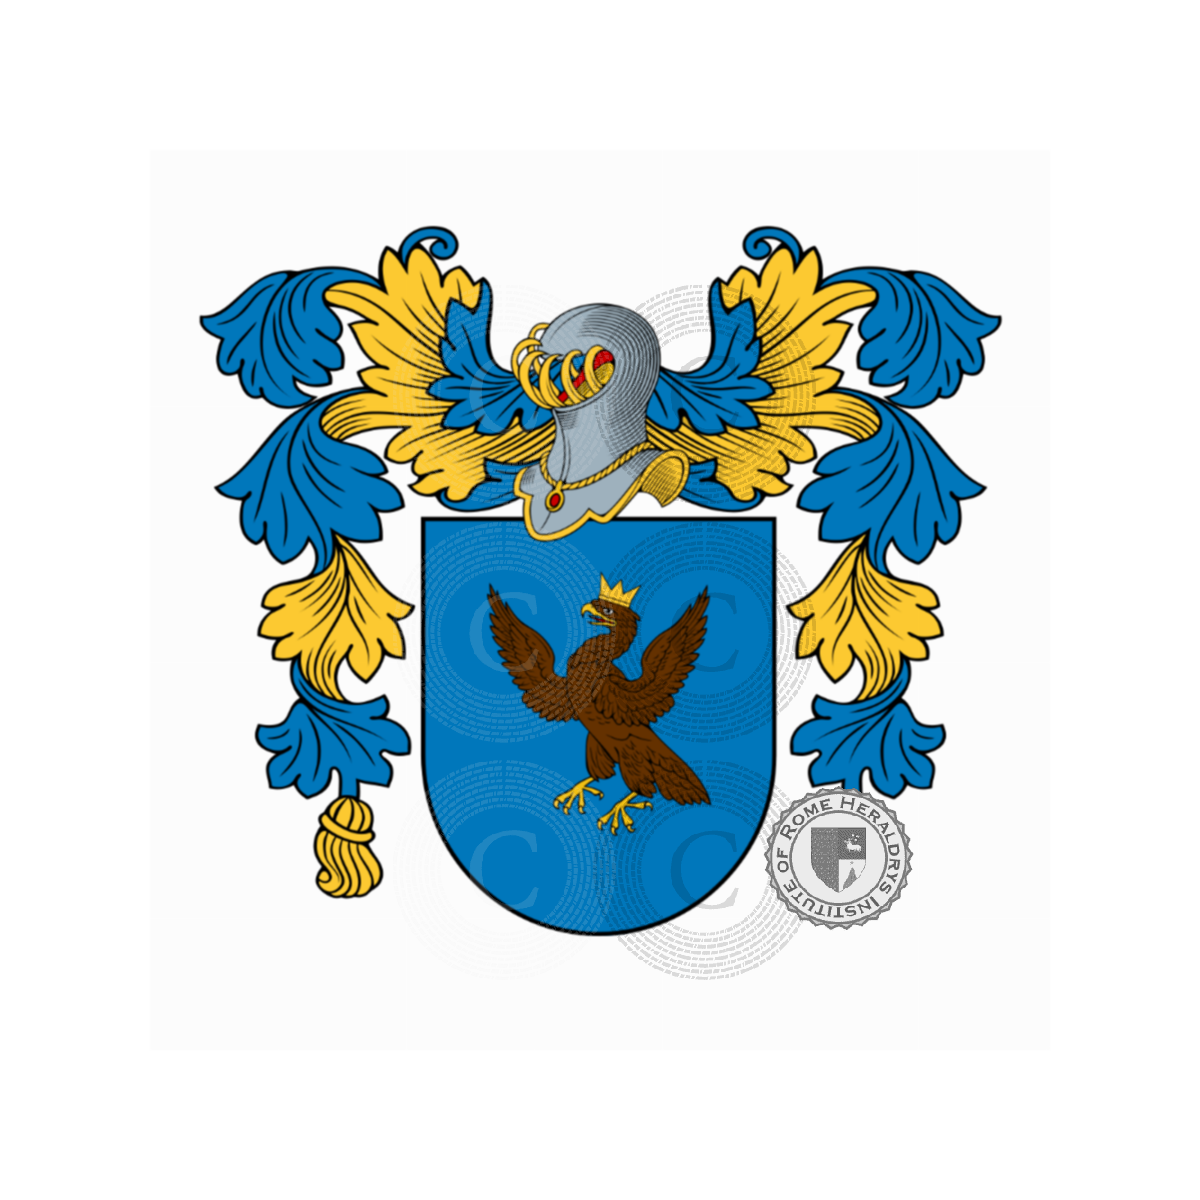 Wappen der FamilieAguiar